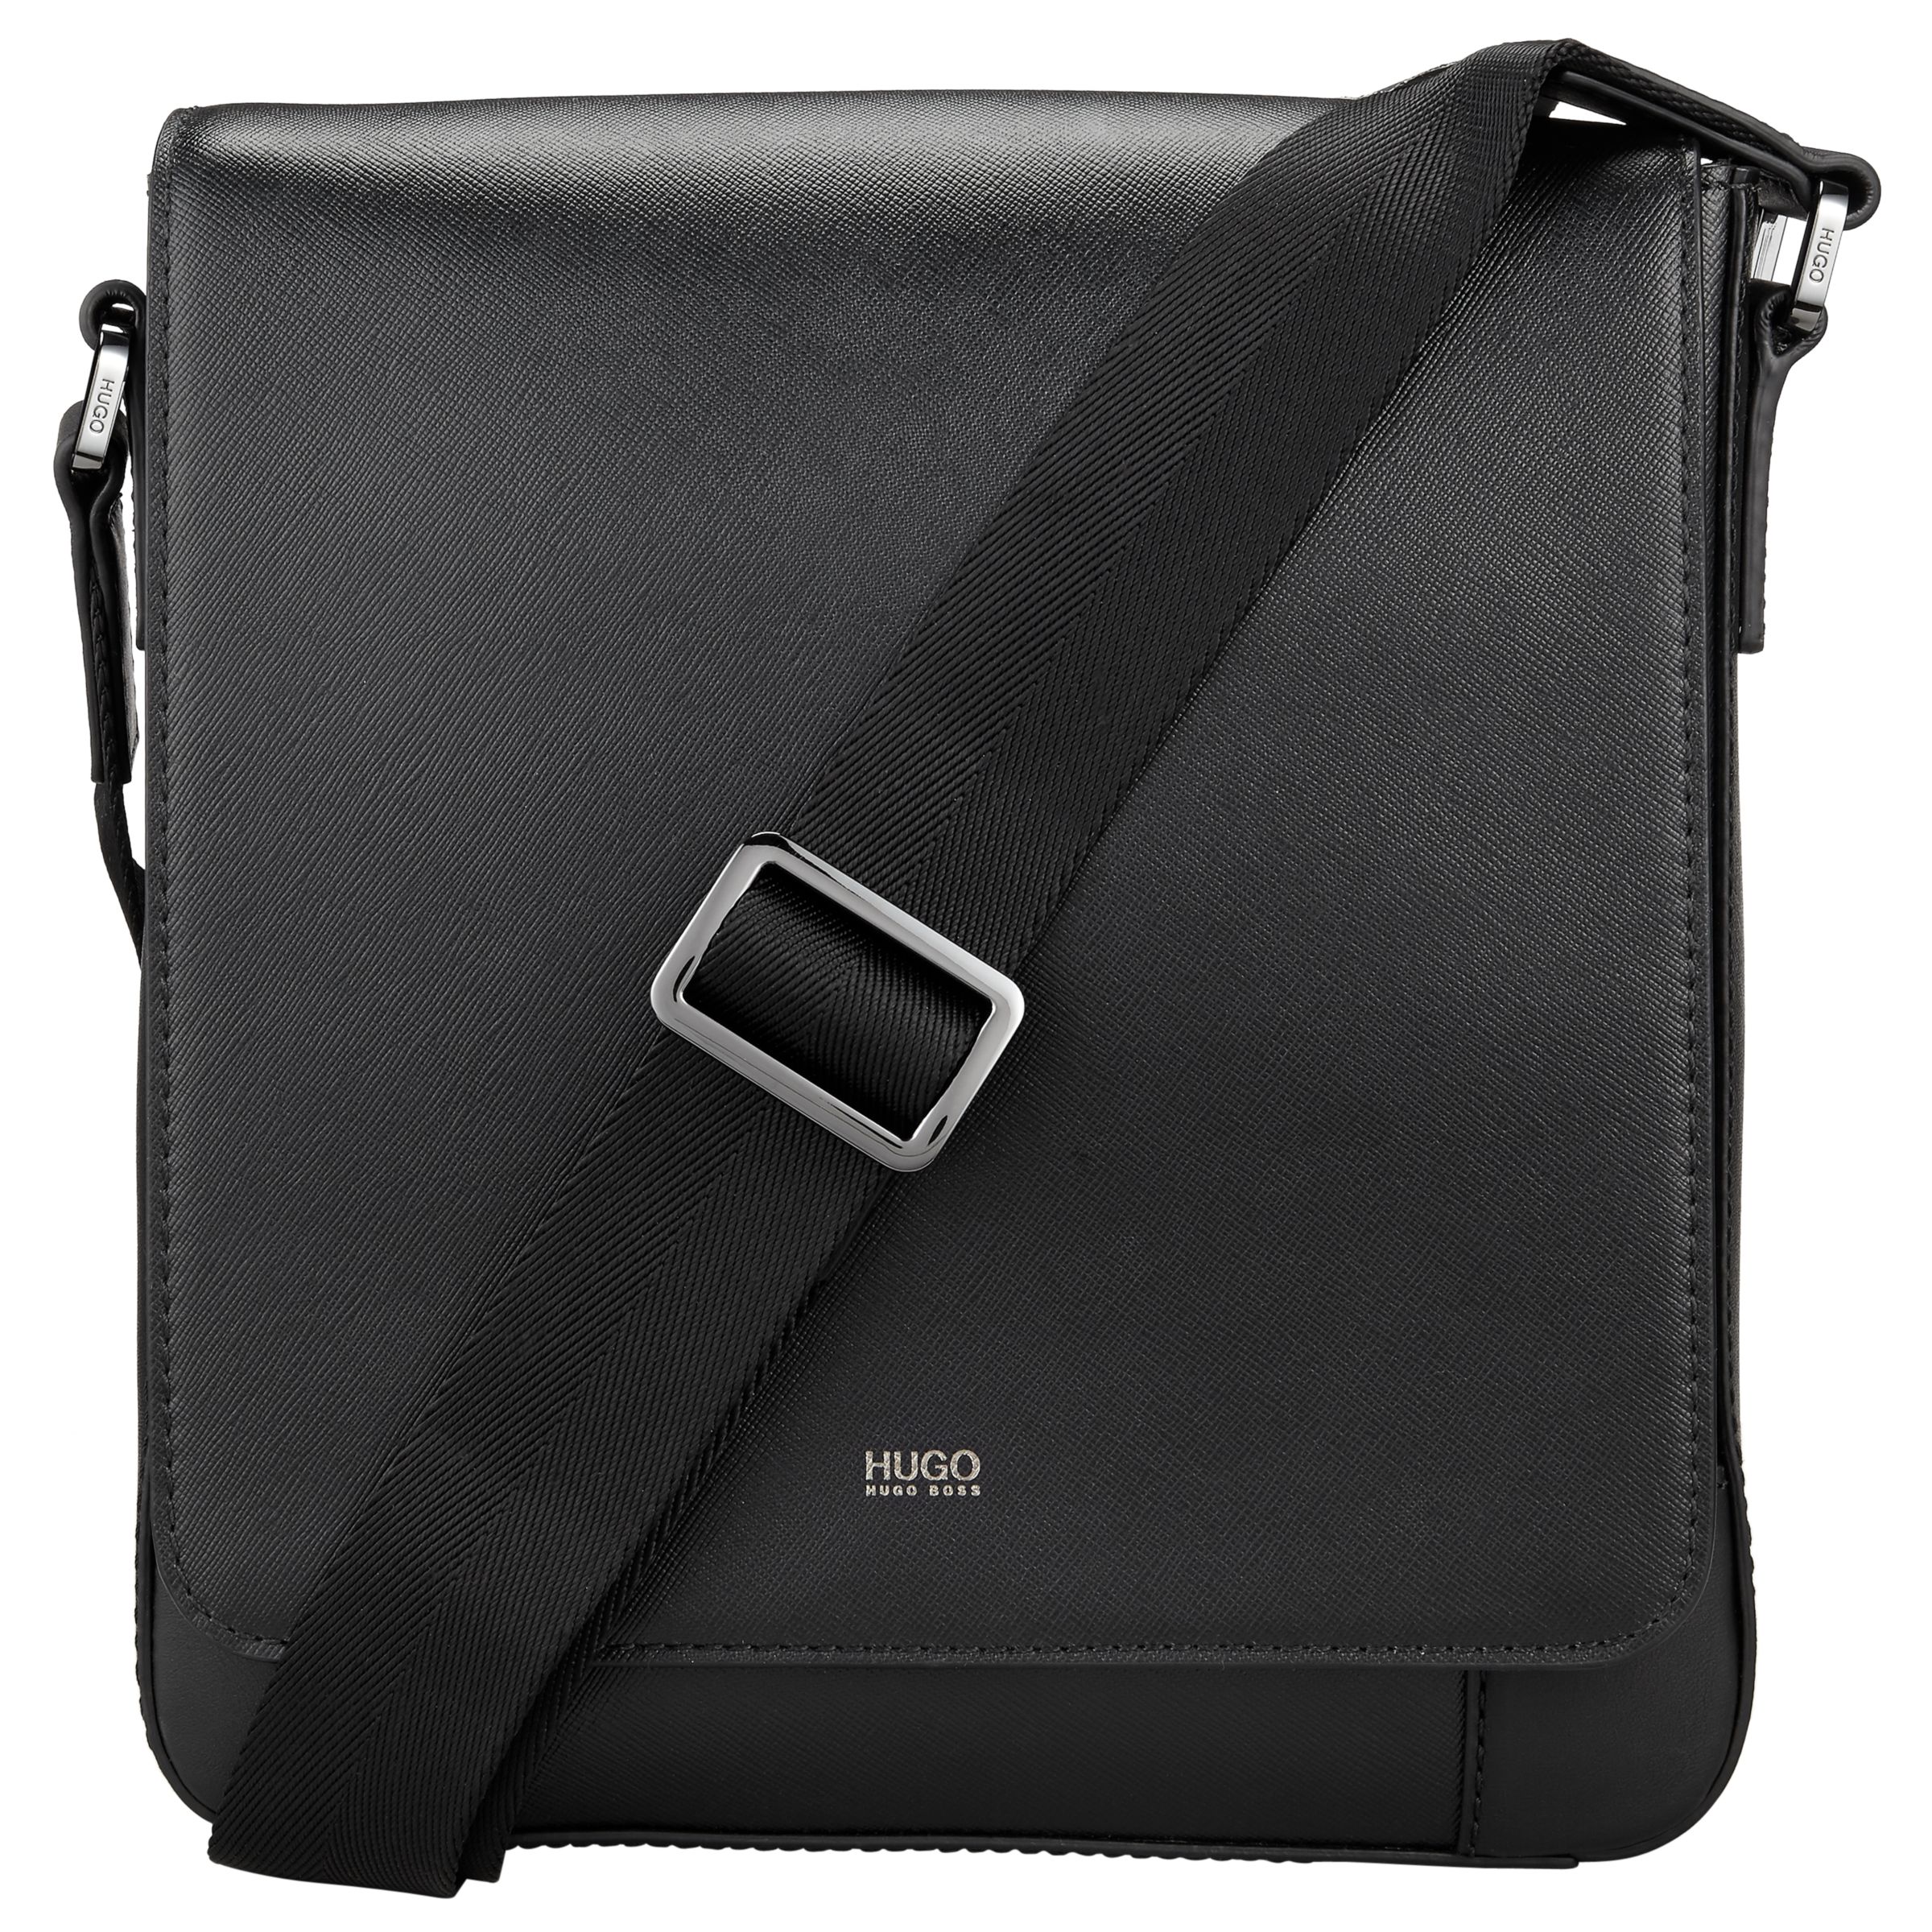 hugo boss computer bag leather